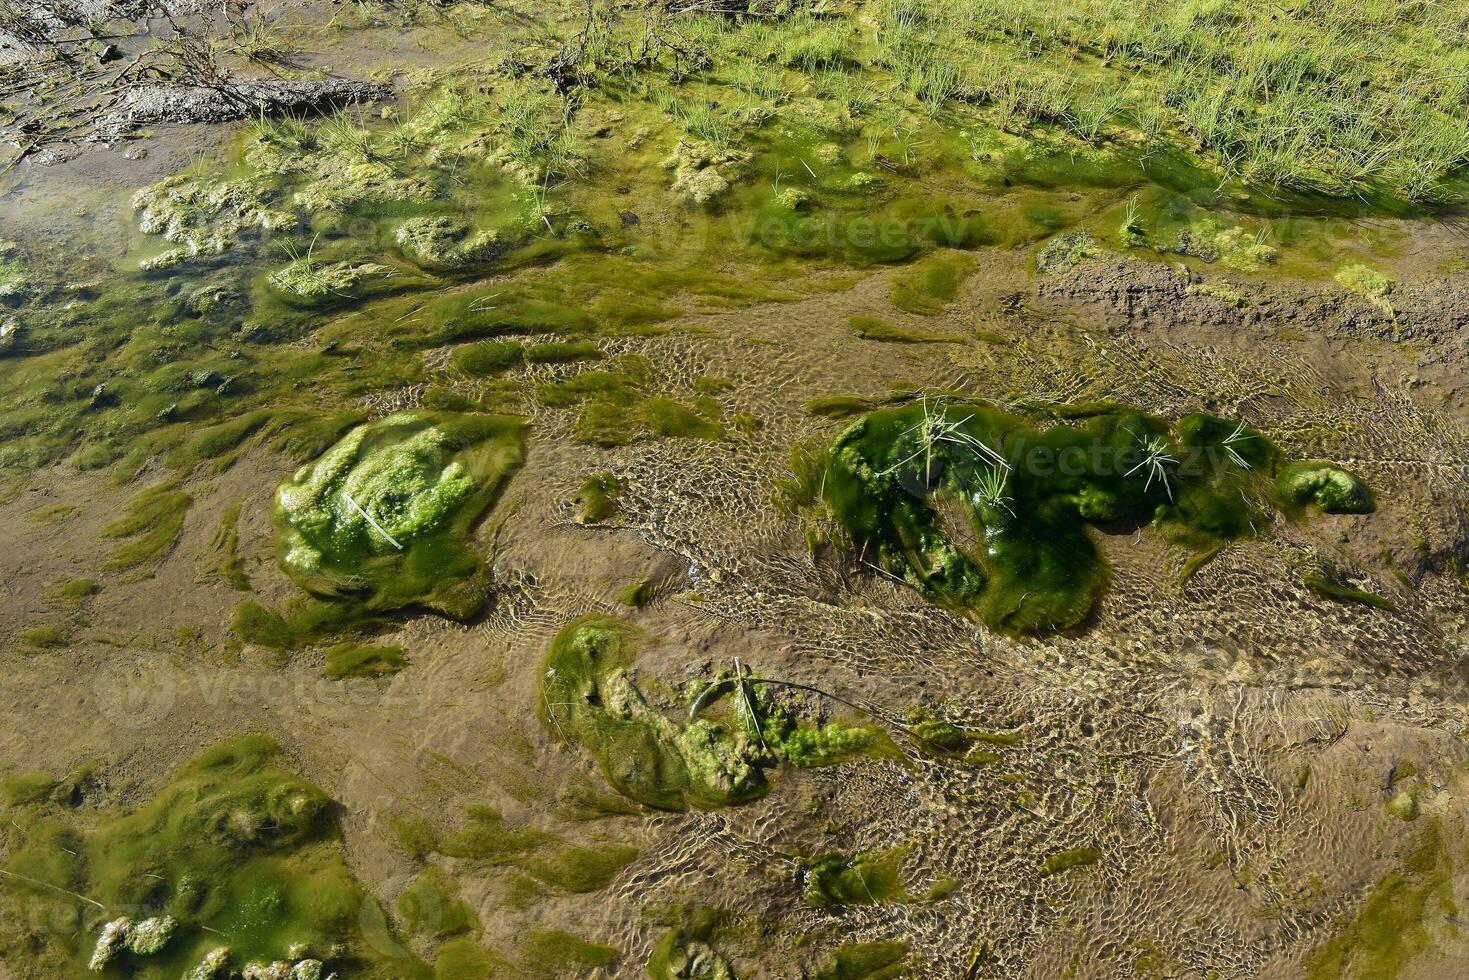 Grün Algen im Wasser- Umgebung , Patagonien, Argentinien. foto